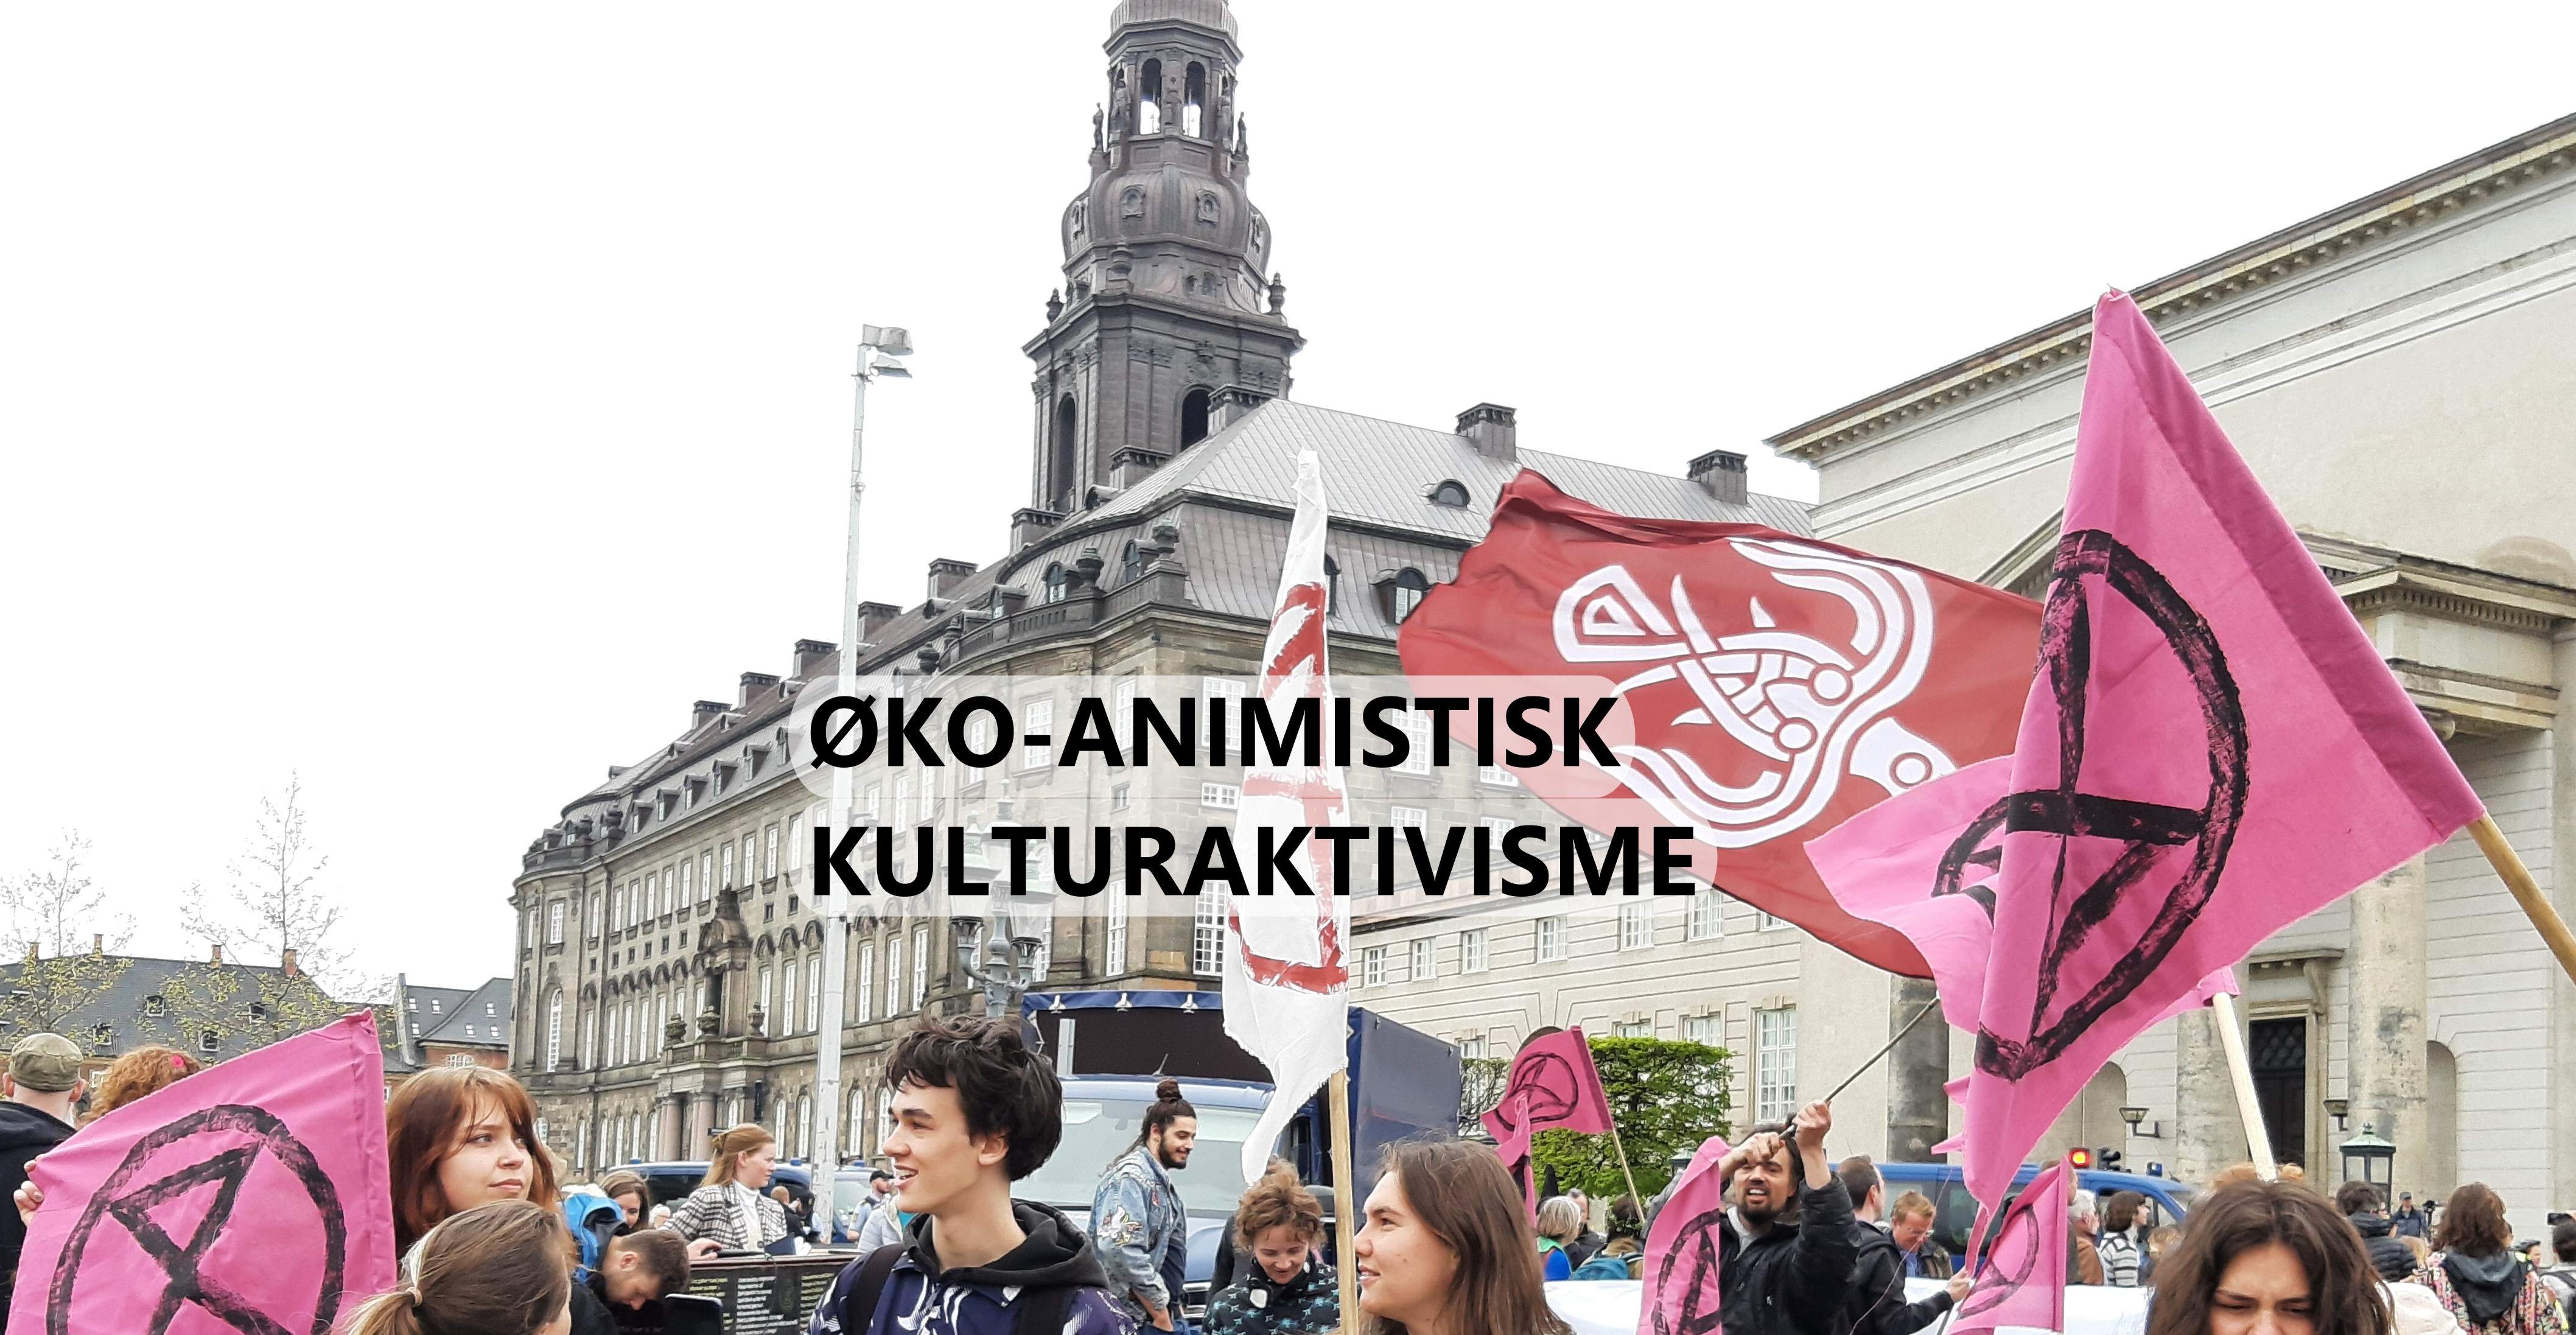 Nordisk Animisme til øko-aktivisme